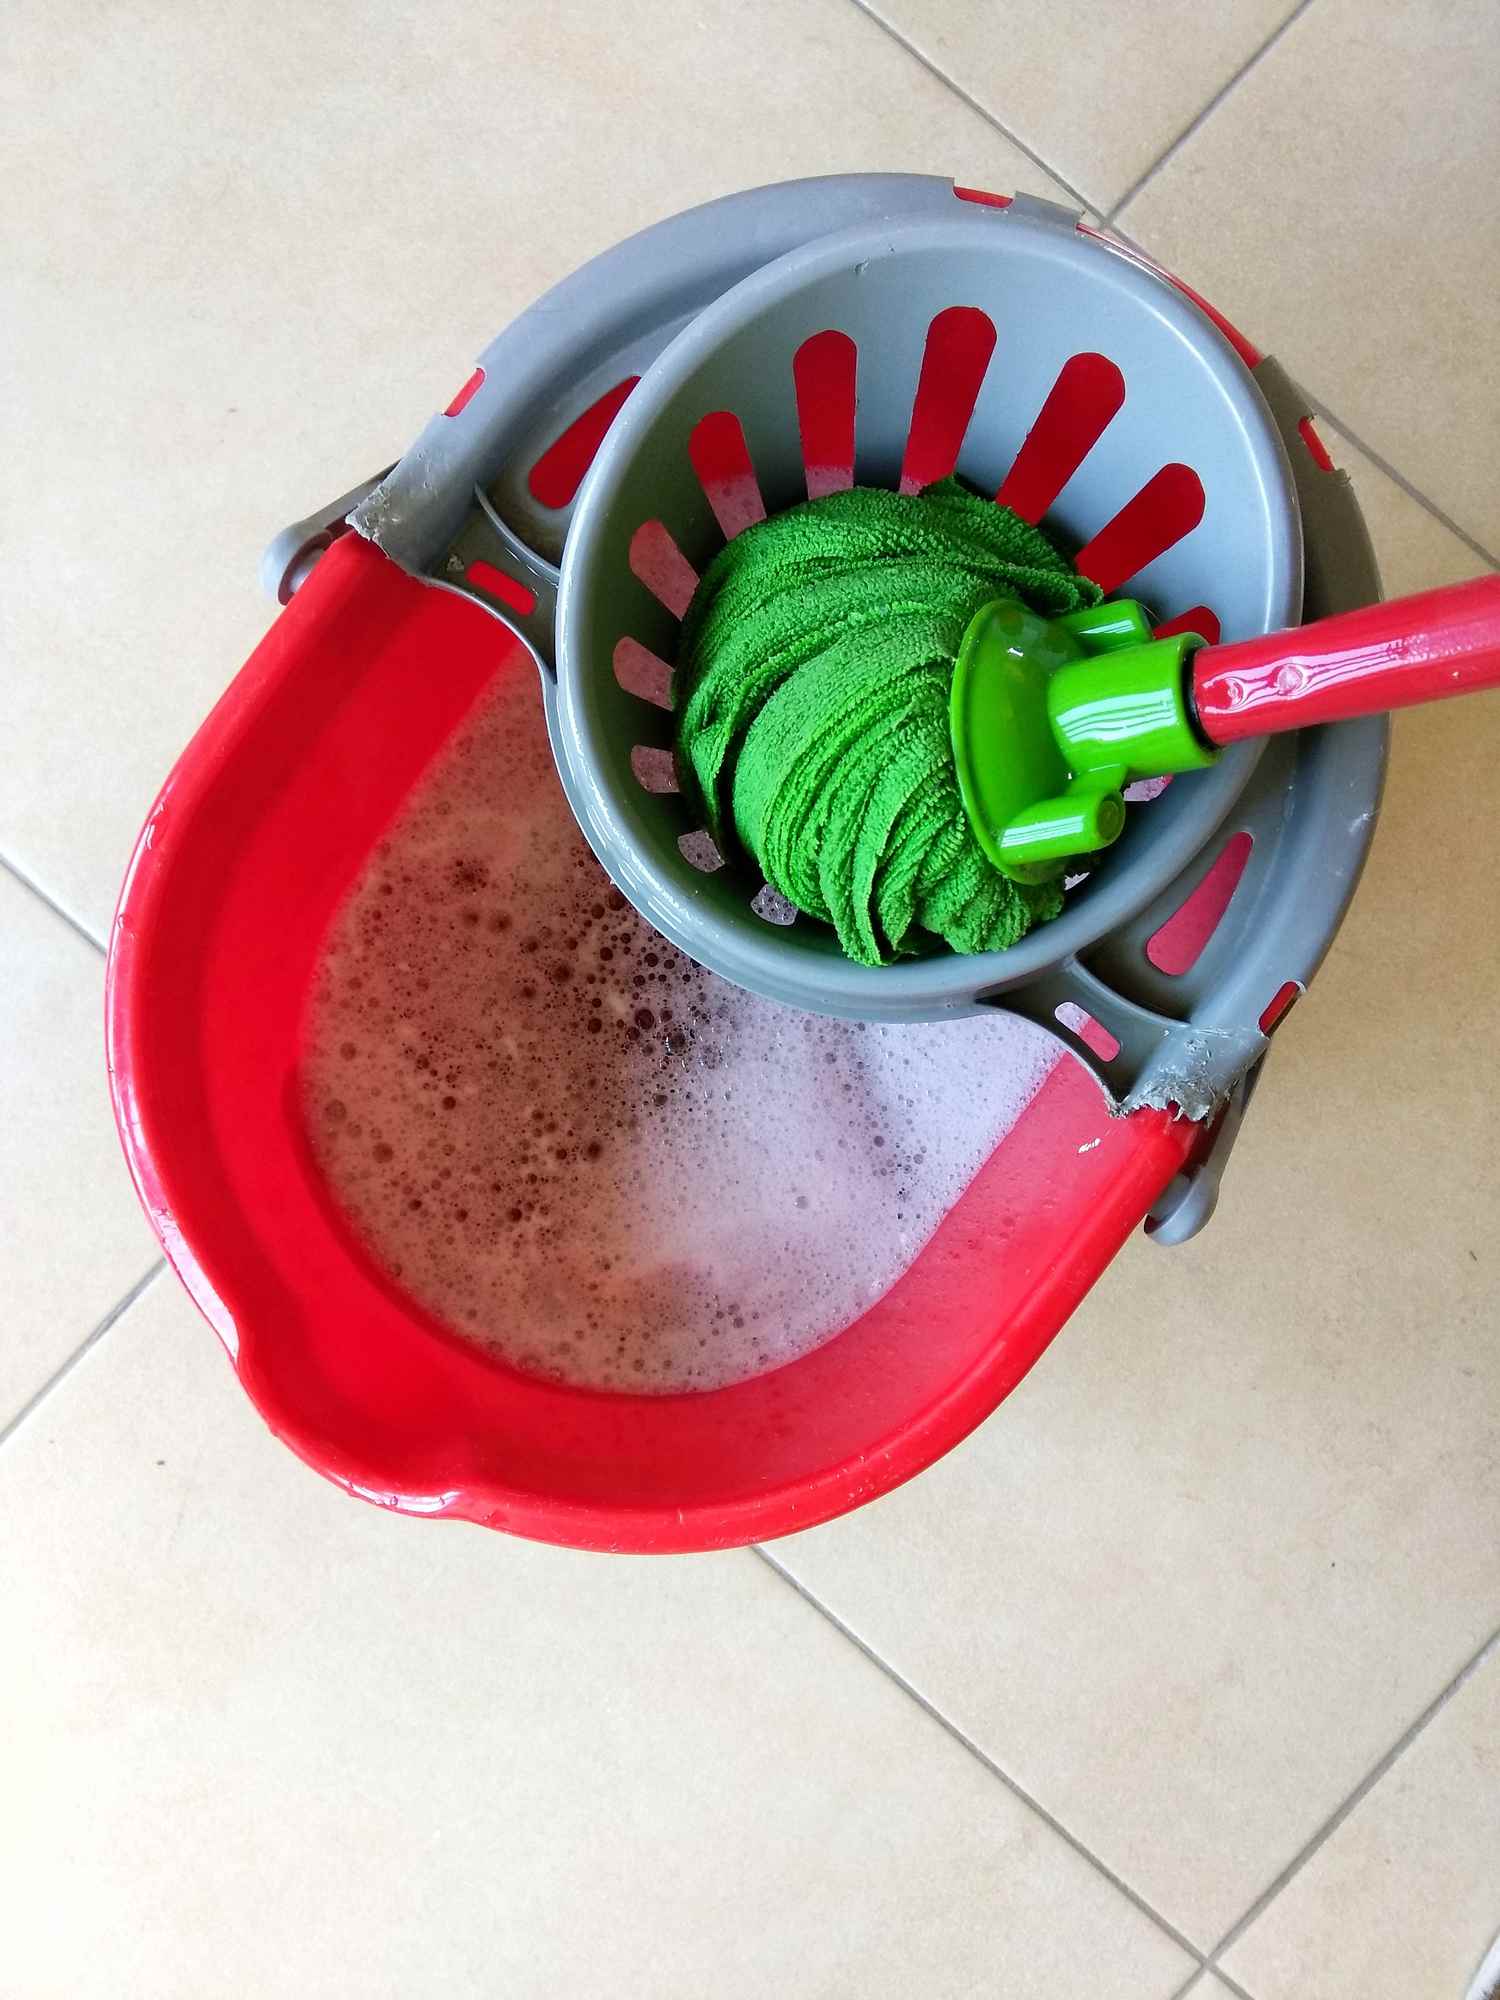 A mop in a bucket